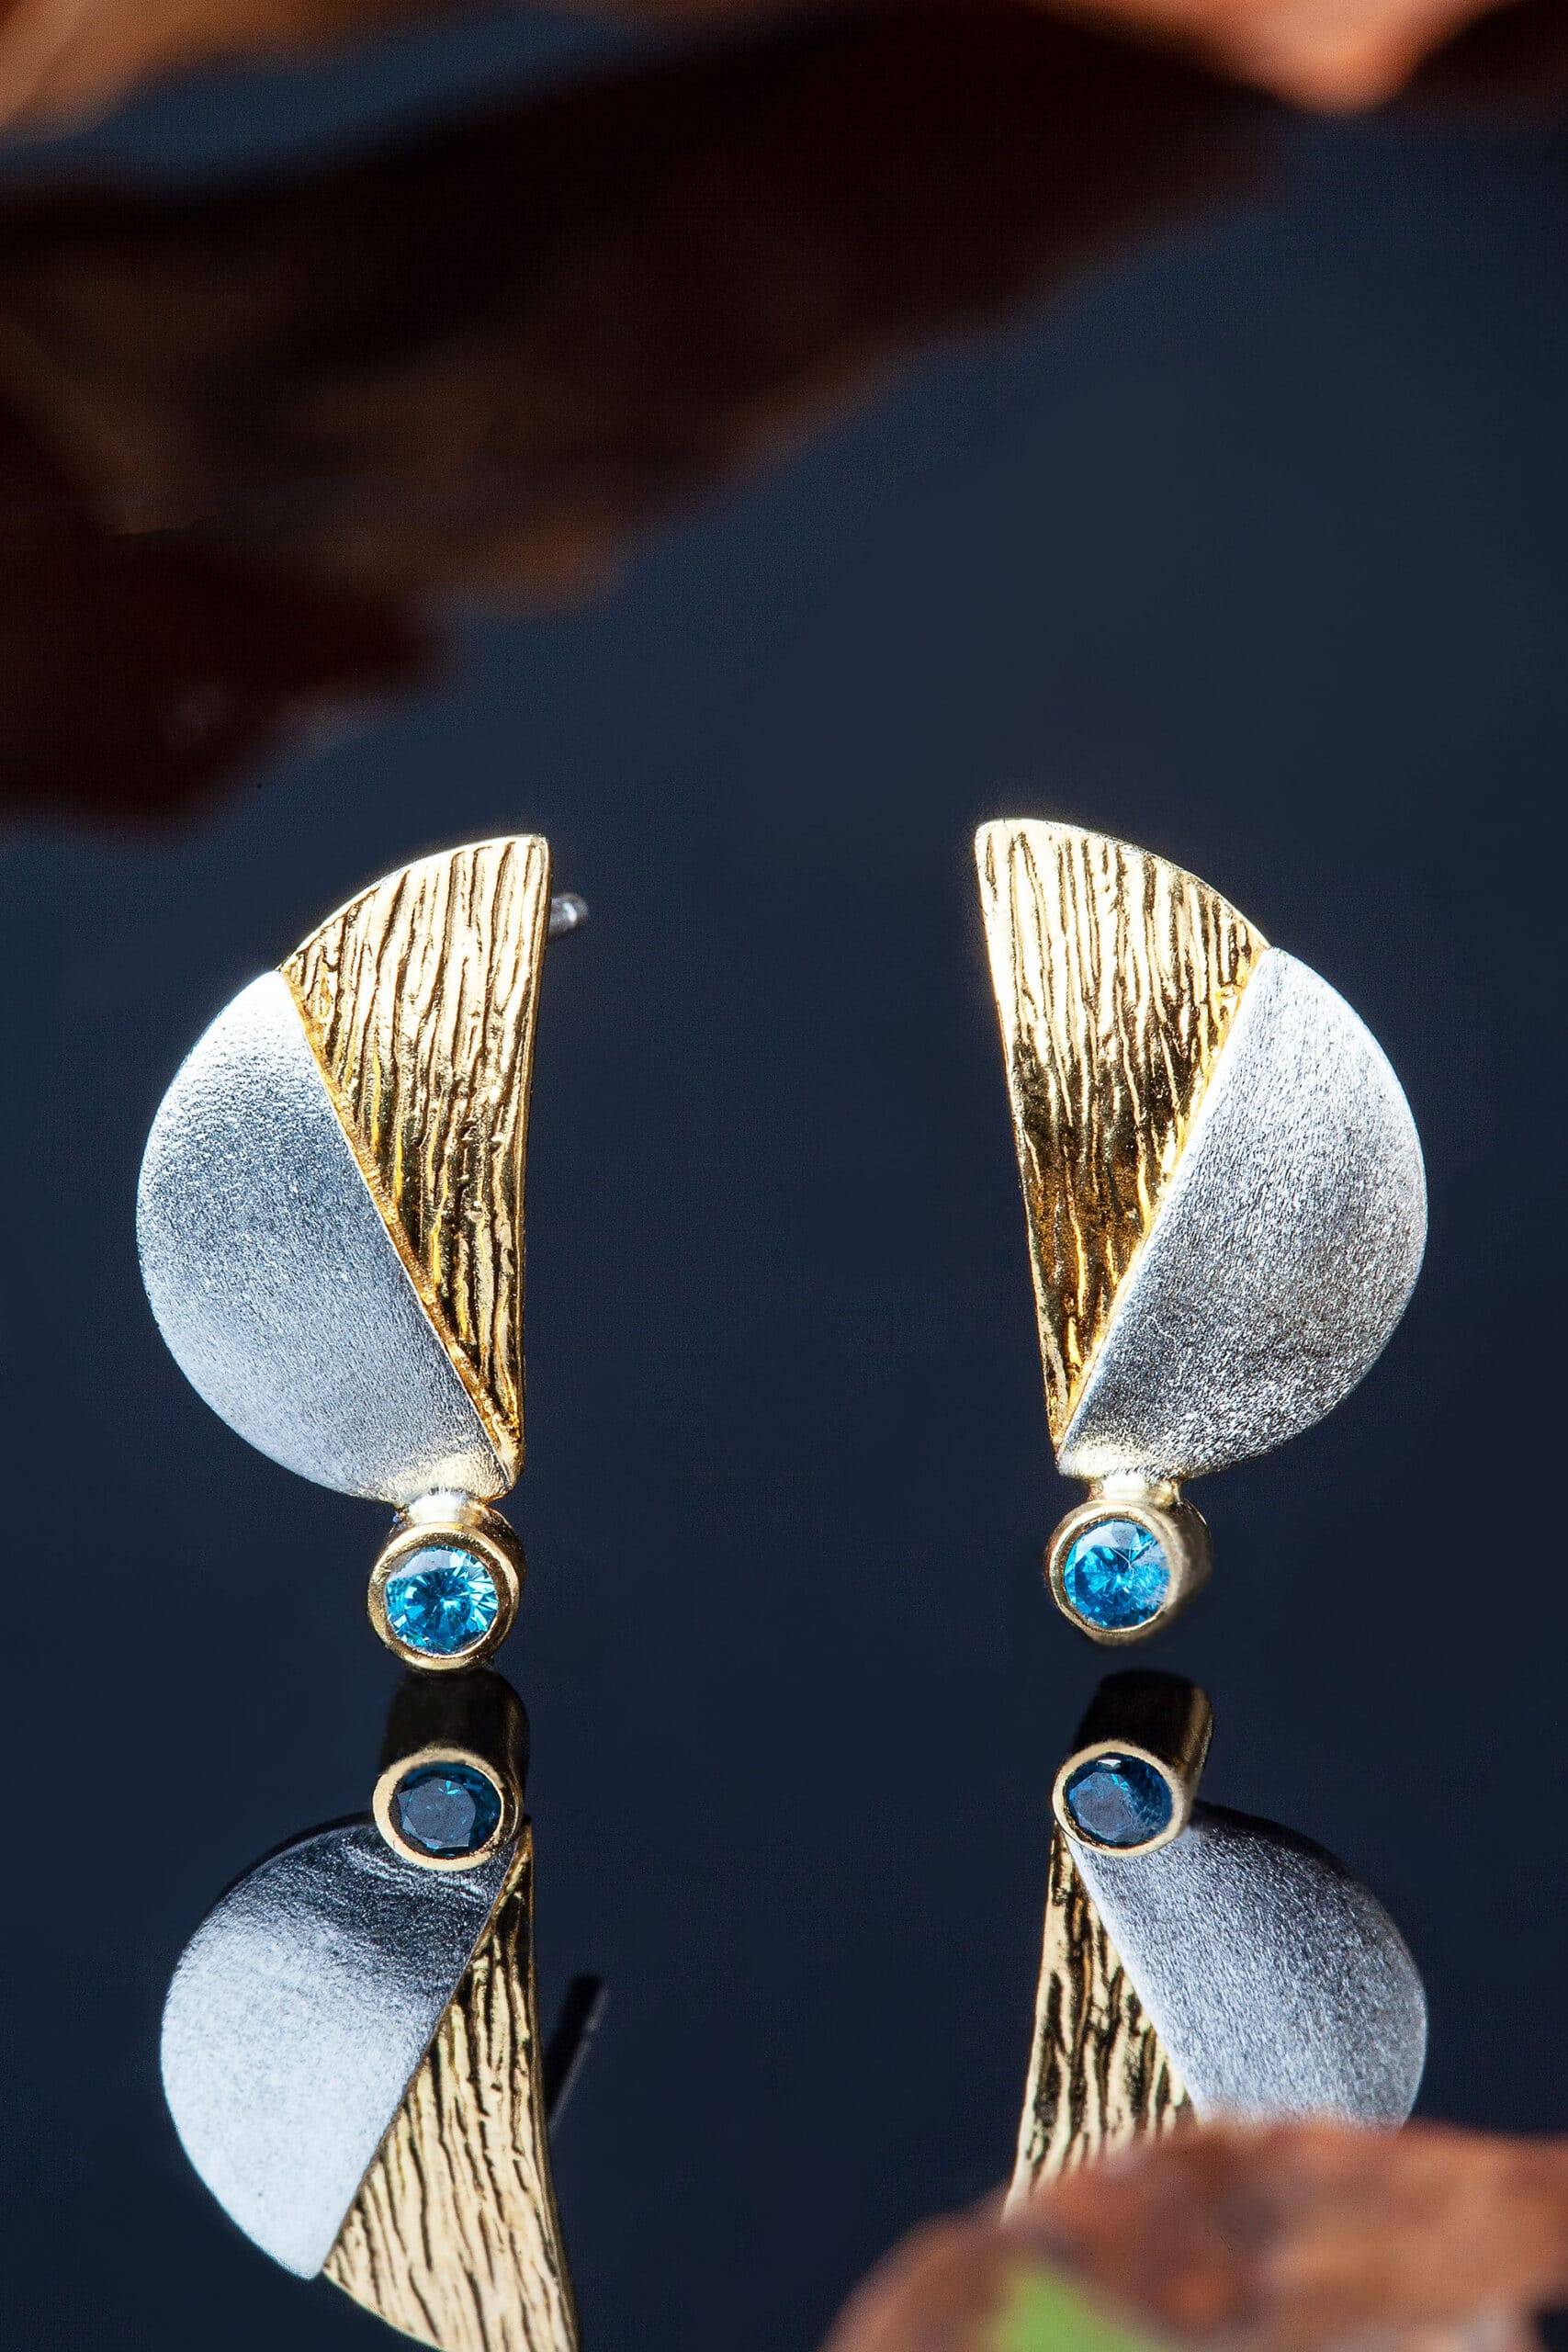 Χειροποίητα κοσμήματα | Ασημένια σκουλαρίκια με επιπλατίνωση και επίχρυσες λεπτομέρειες, συνδυασμένα με ζιργκόν gallery 1